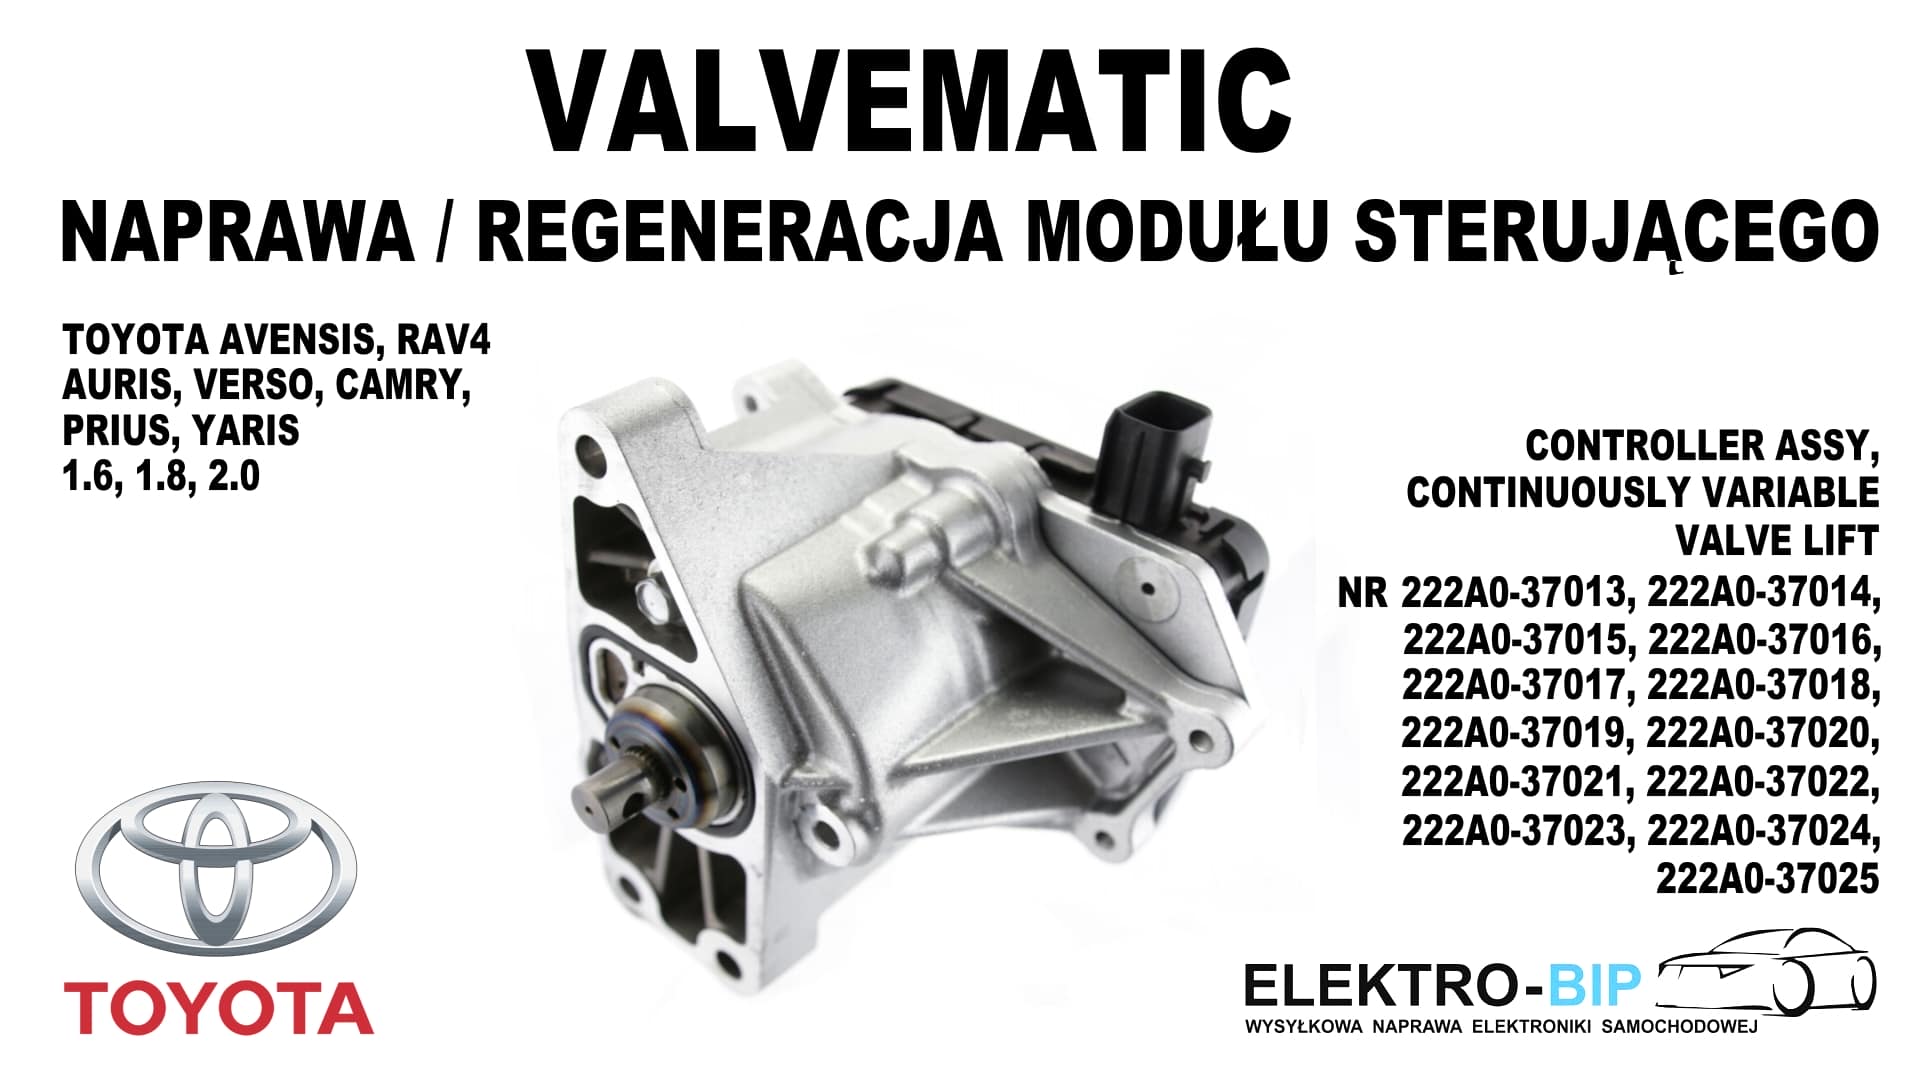 Valvematic, naprawa/regeneracja modułu sterującego tagi: moduł sterujący Valvematic, obok niego napisy: Valvematic - naprawa/regeneracja modułu sterującego, Toyota Avensis, Rav4, Auris, Verso, Camry, Prius, Yaris 1.6, 1.8, 2.0, Controller Assy Continously Variable Valve LIft nr 222A0-37013, 222A0-37014, 222A0-37015, 222A0-37016, 222A0-37017, 222A0-37018, 222A0-37019, 222A0-37020, 222A0-37021, 222A0-37022, 222A0-37023, 222A0-37024, 222A0-37025. 